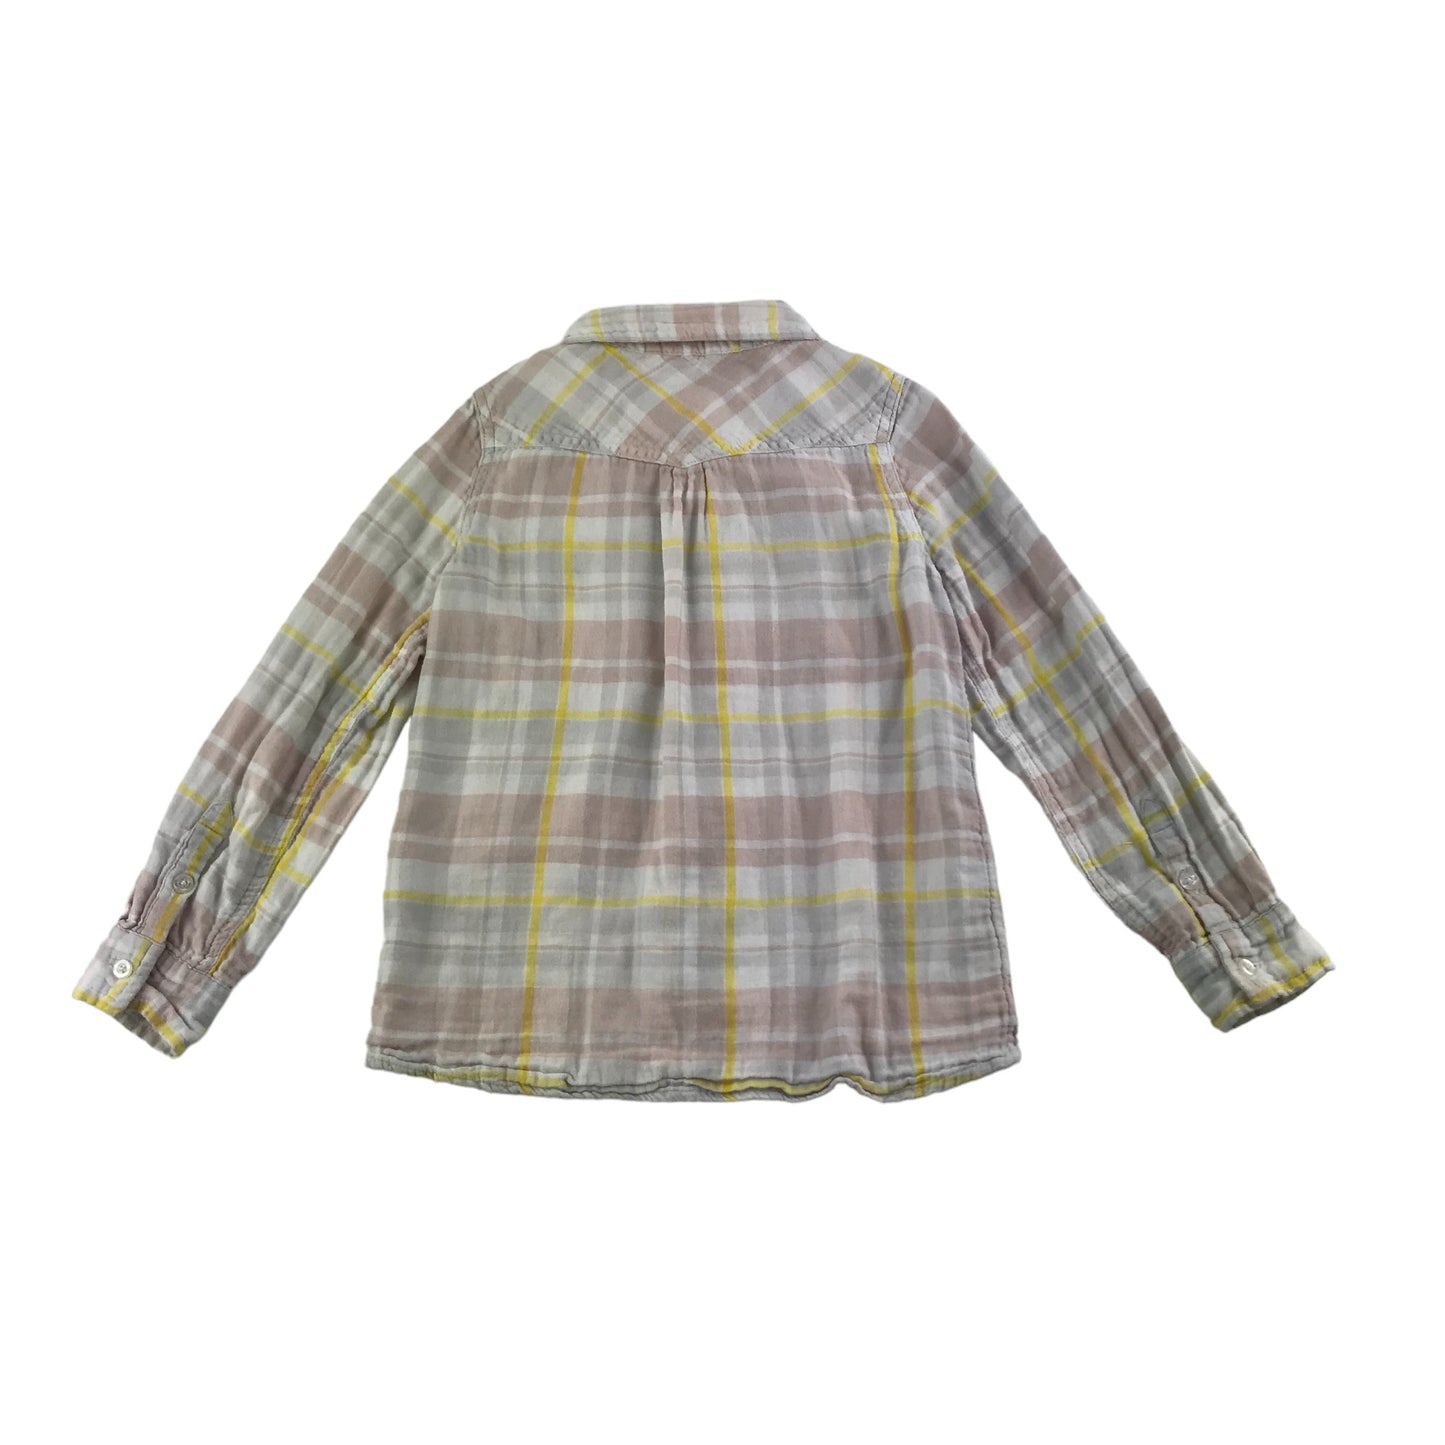 Stella McCartney Shirt Age 7-8 Light pink and Yellow Button Up Cotton